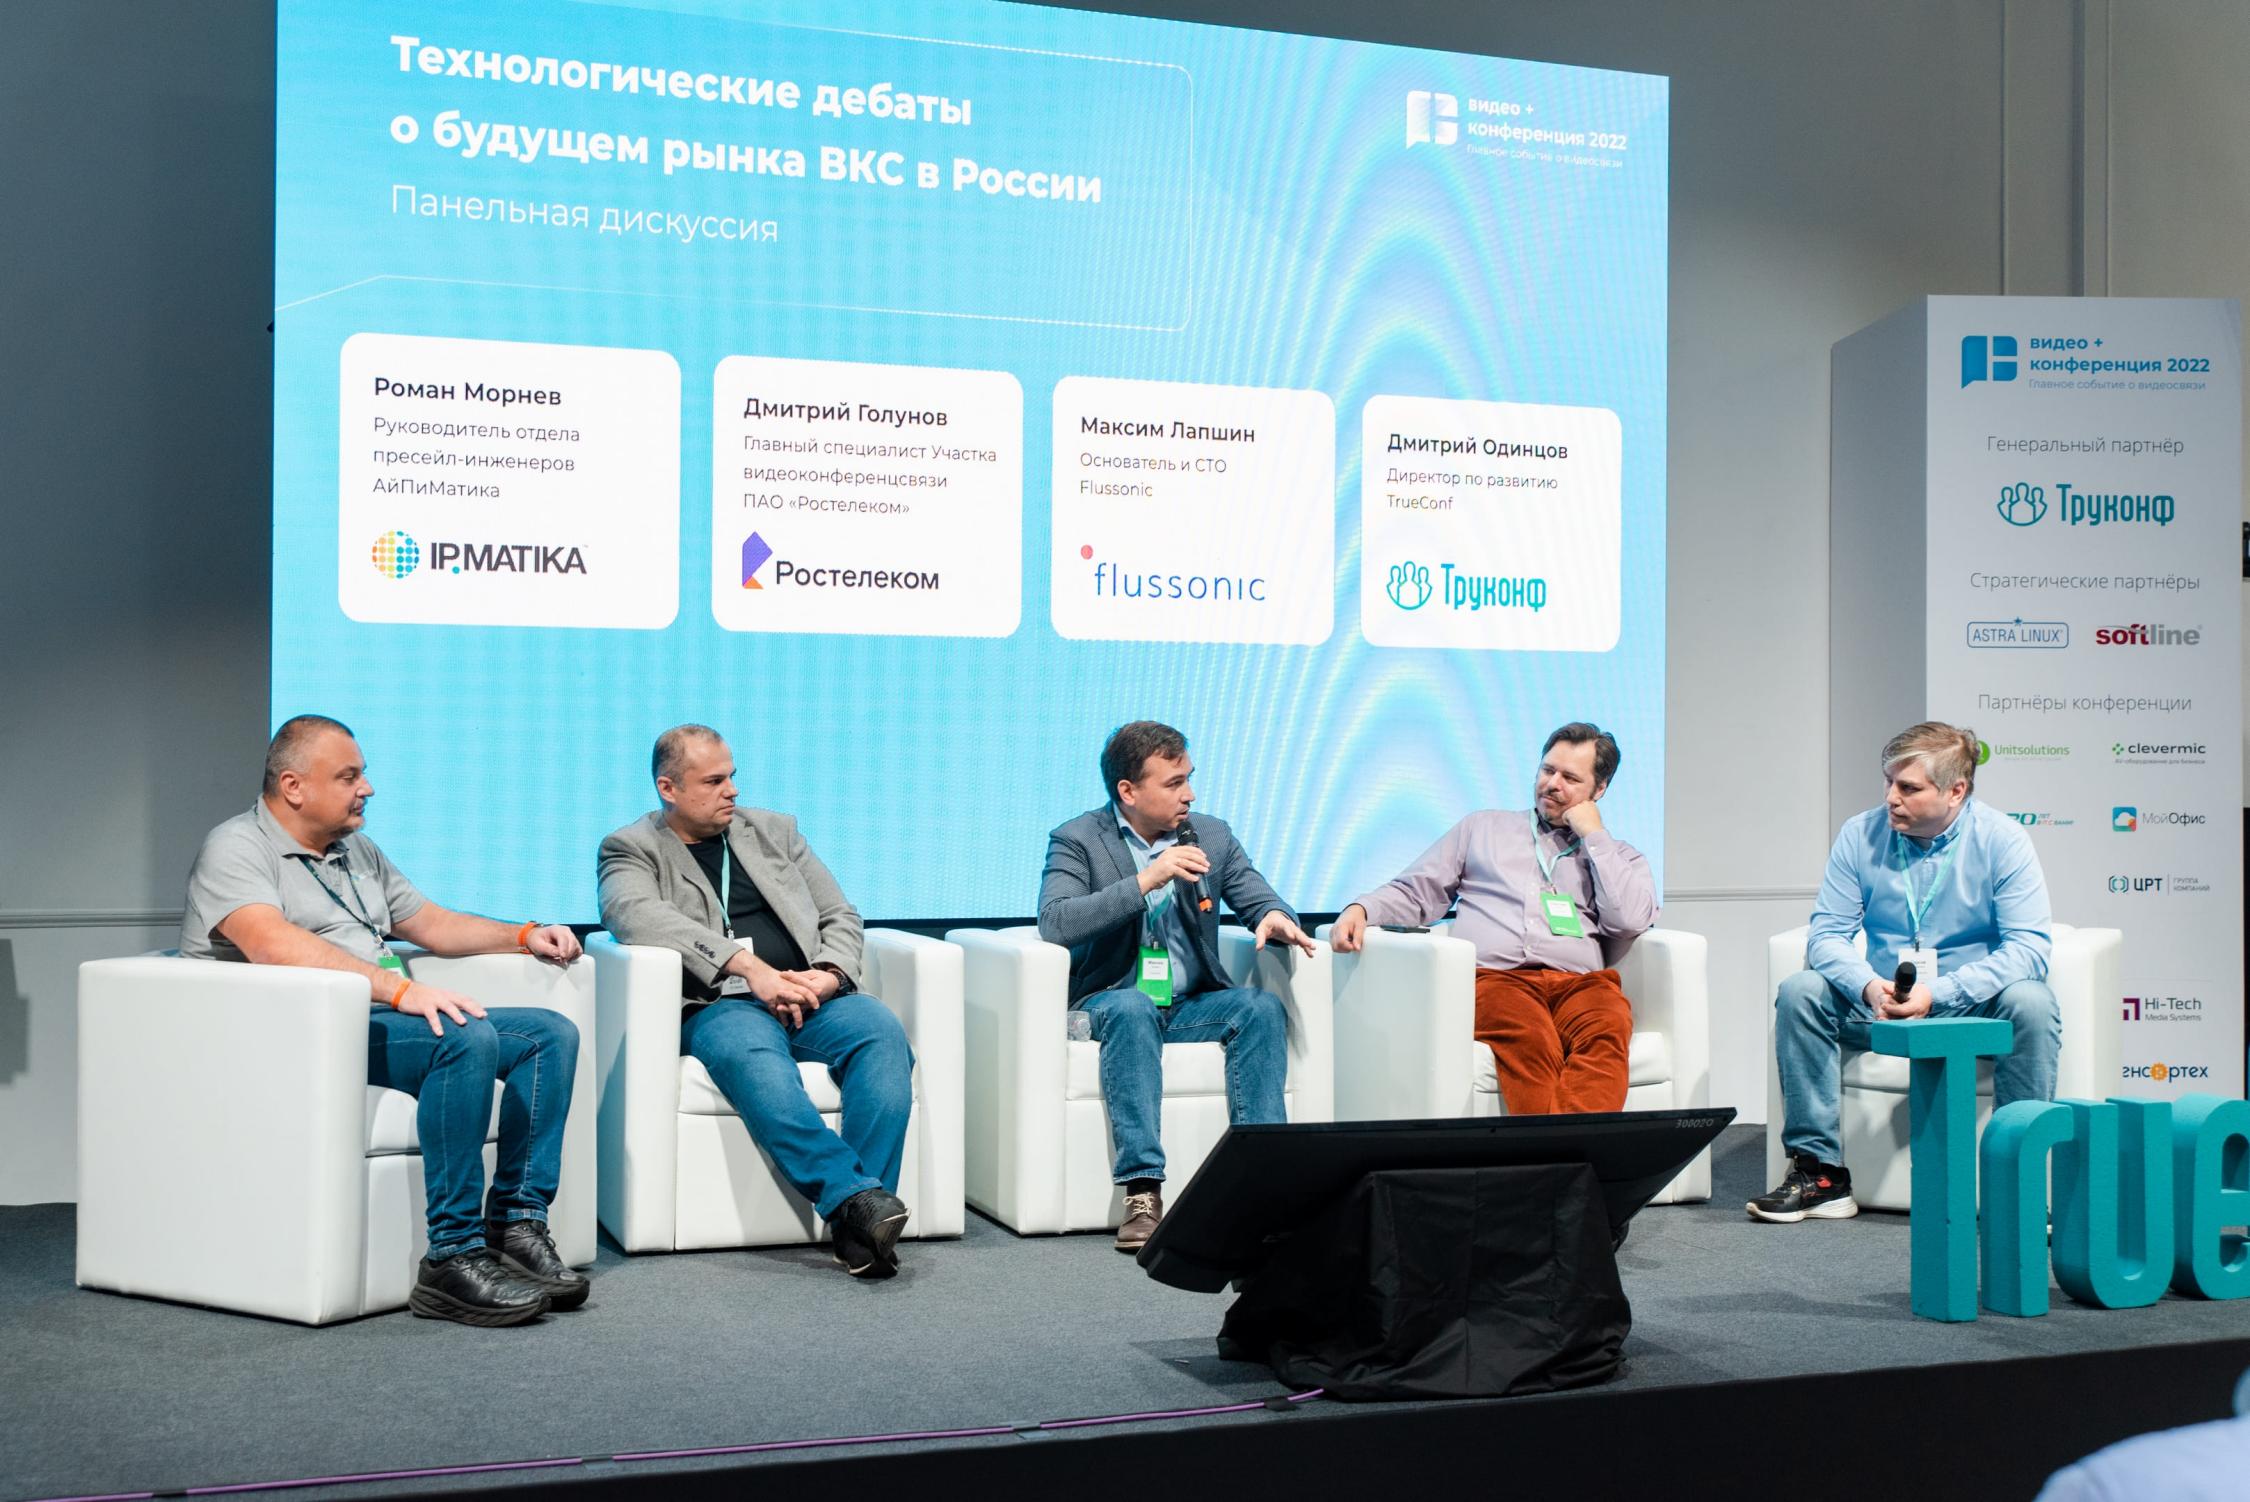 Технологические дебаты о будущем рынка ВКС в России